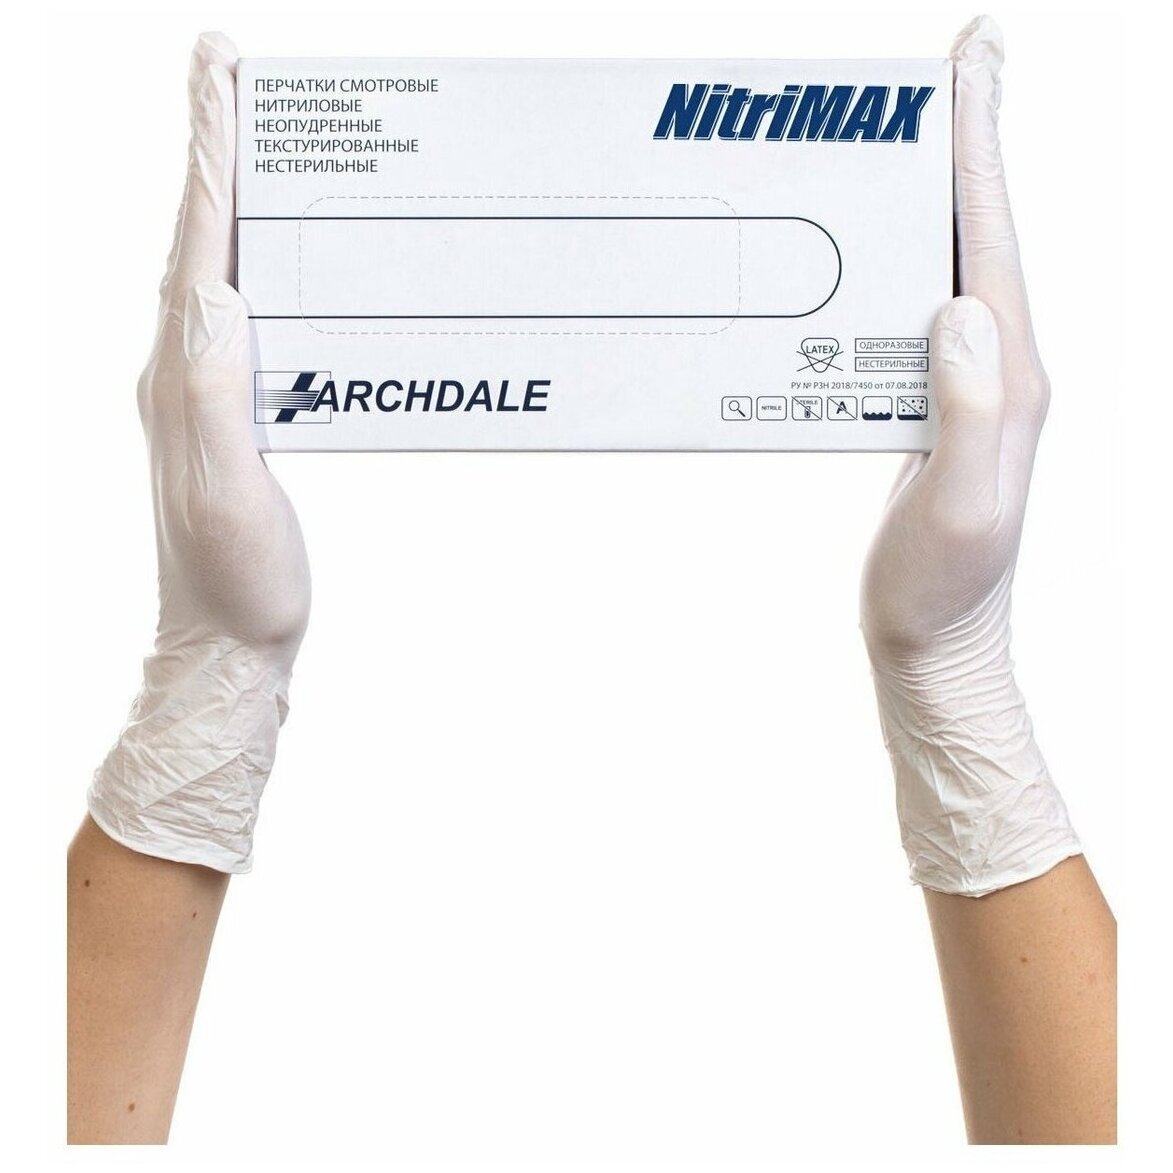 Перчатки Archdale Nitrimax смотровые нестерильные нитриловые неопудренные текстурированные белые размер S 50 пар